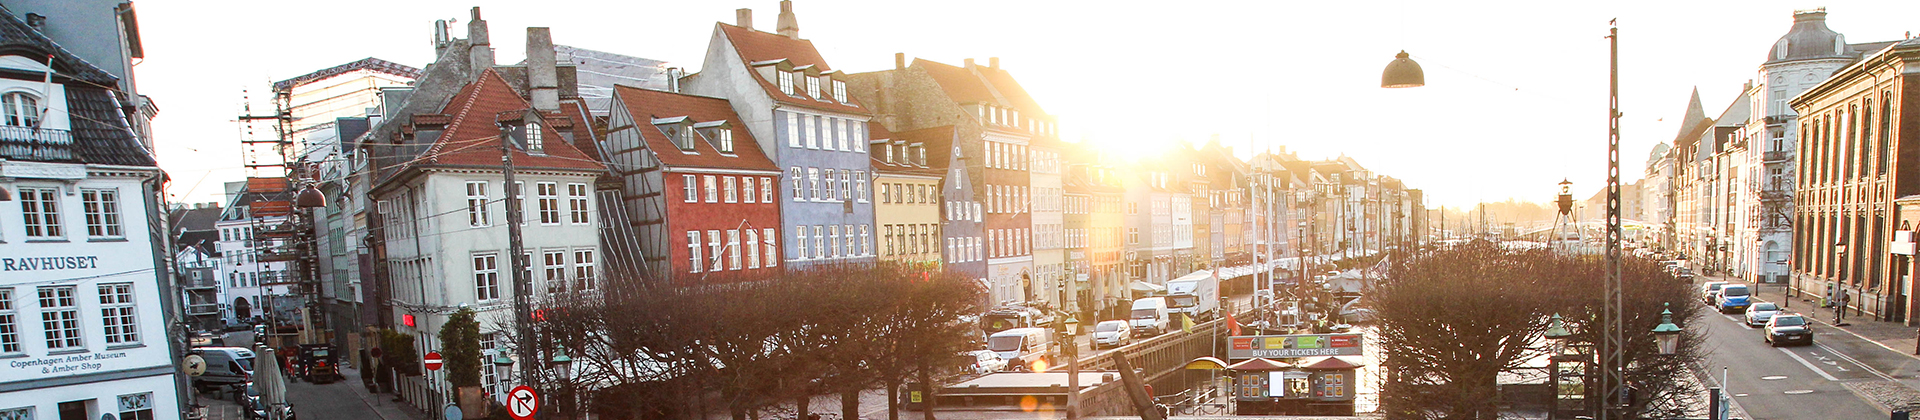 Nordhavn à Copenhague : des solutions écoénergétiques pour des villes modernes